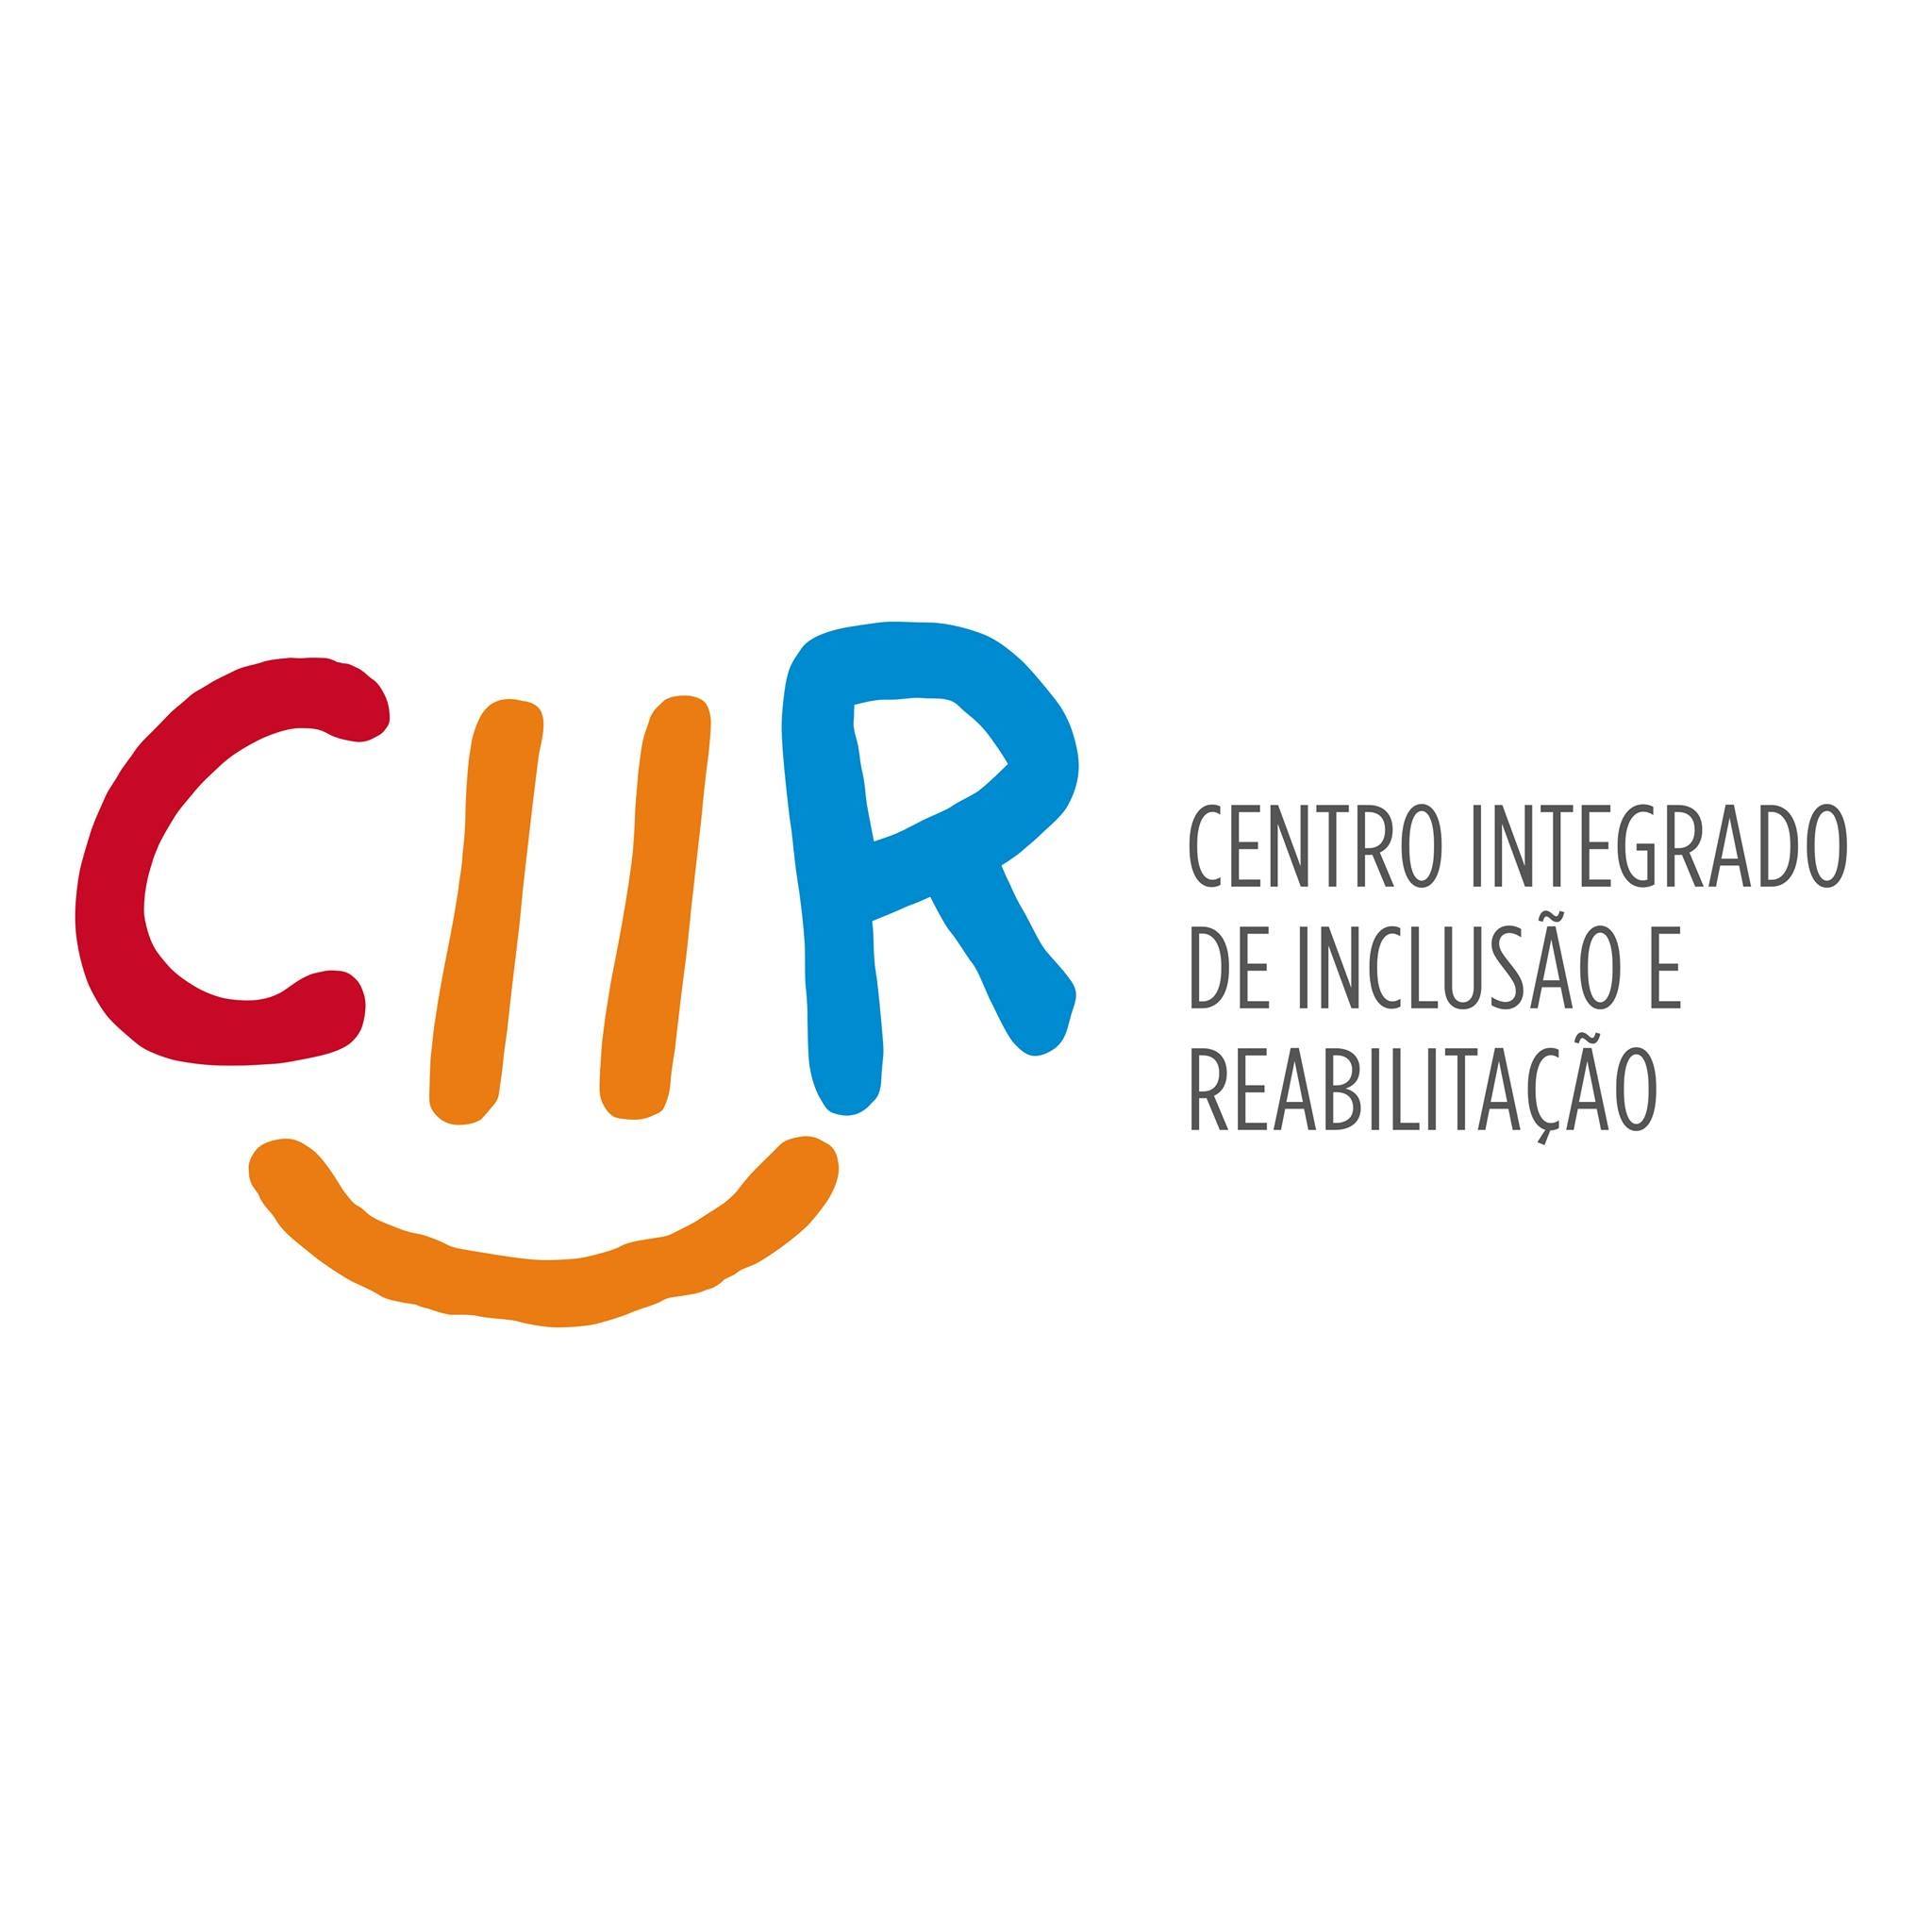 CIIR - Centro Integrado de Inclusão e Reabilitação